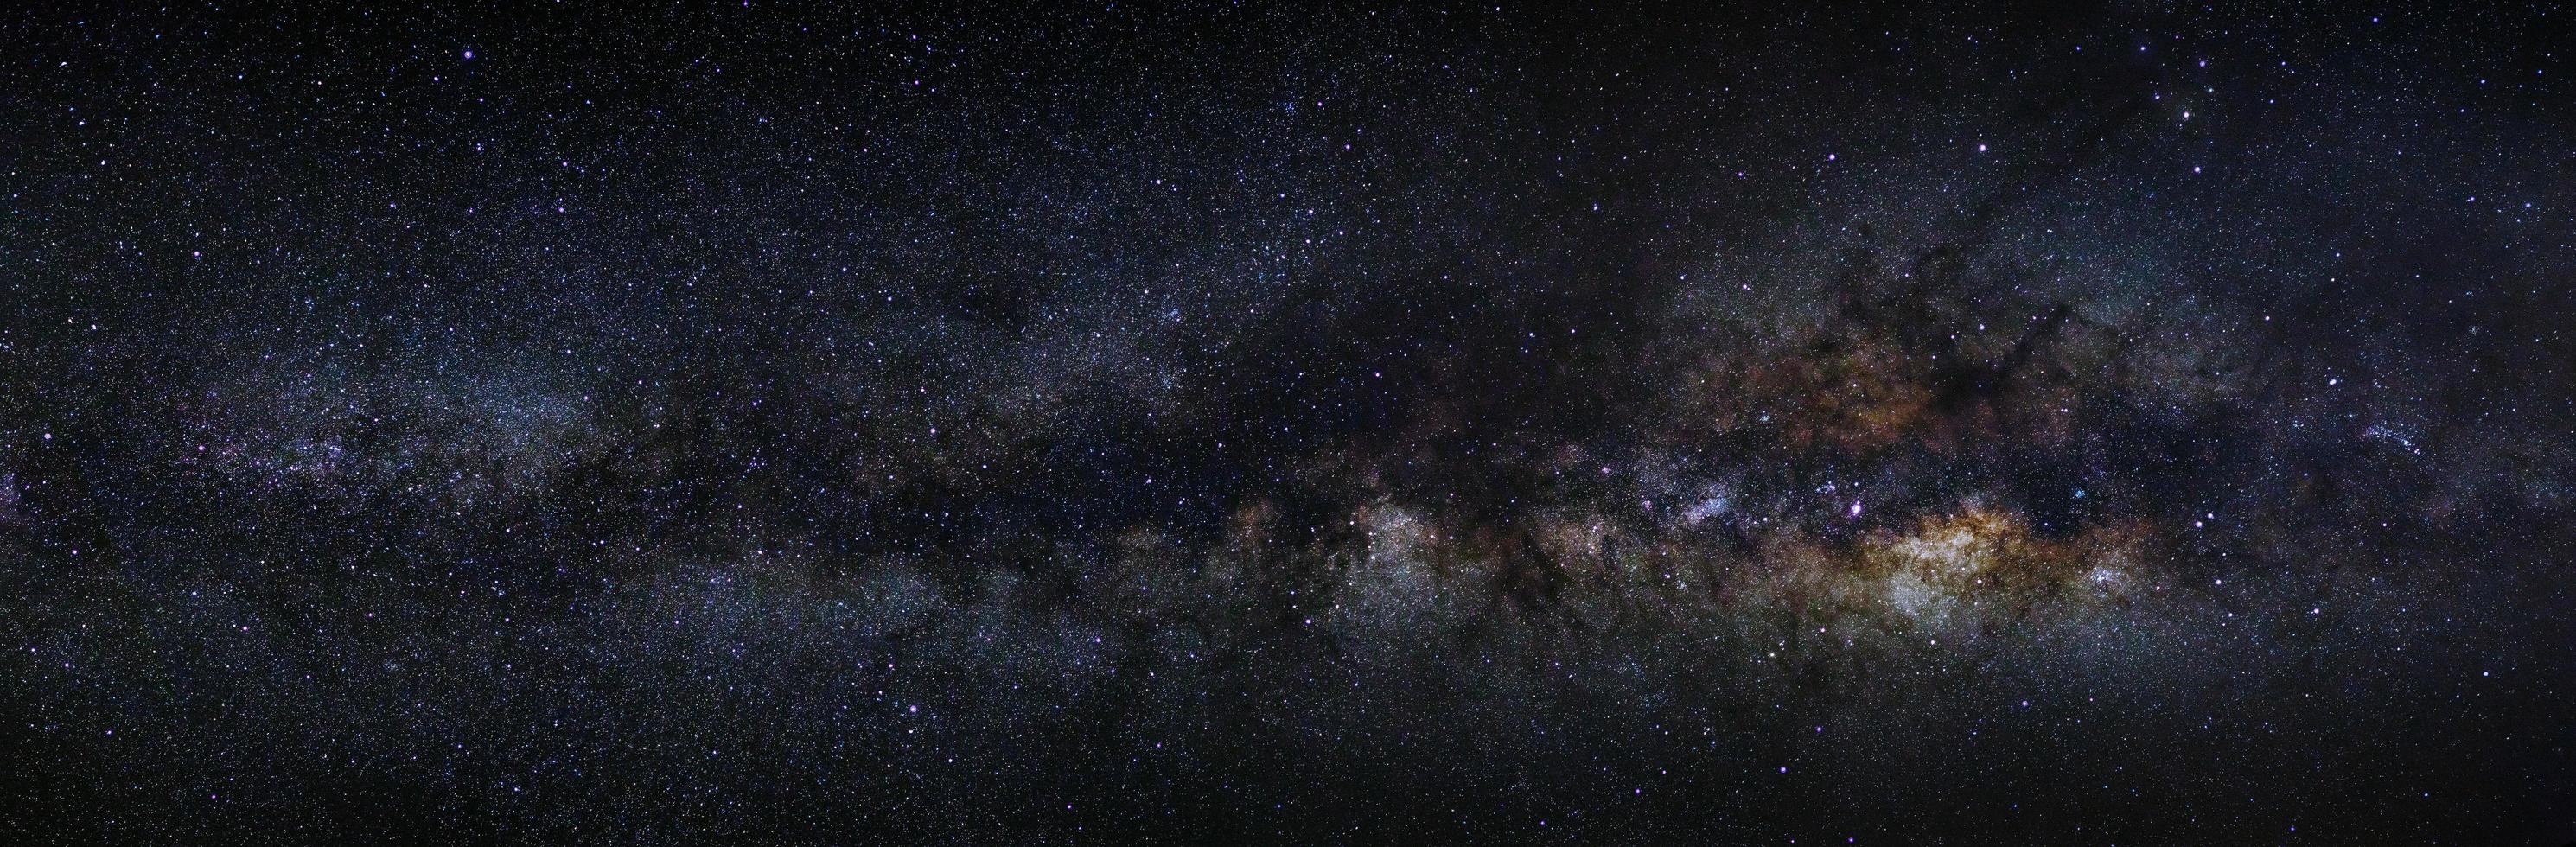 galassia della Via Lattea panoramica su un cielo notturno, fotografia a lunga esposizione, con grano. foto